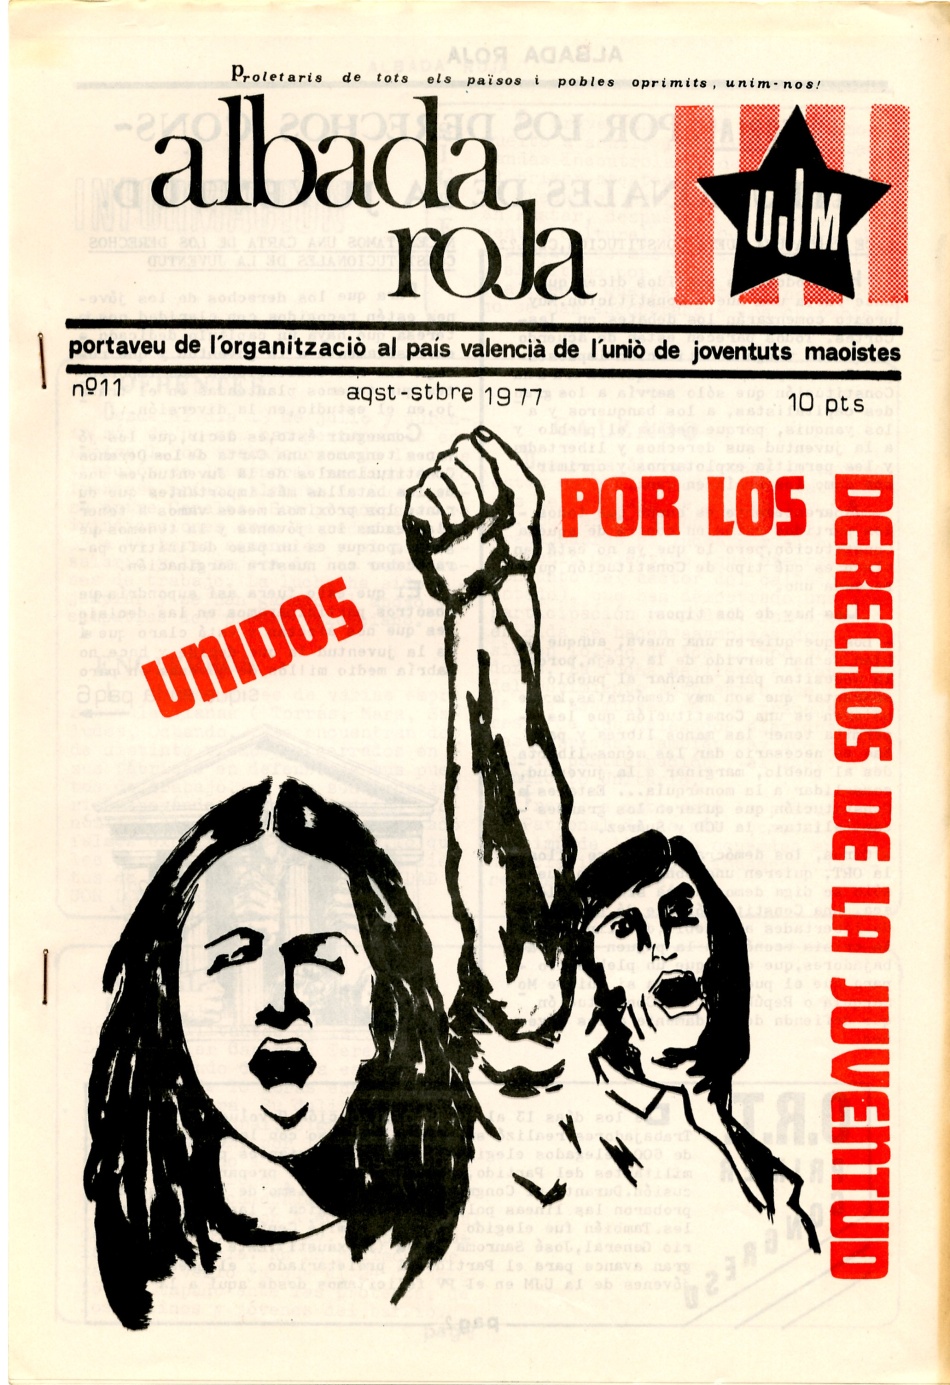 ALBADA ROJA, Periodico de las Juventudes Maosistas del Pais Valenciá. Legalización y democracia Ahora